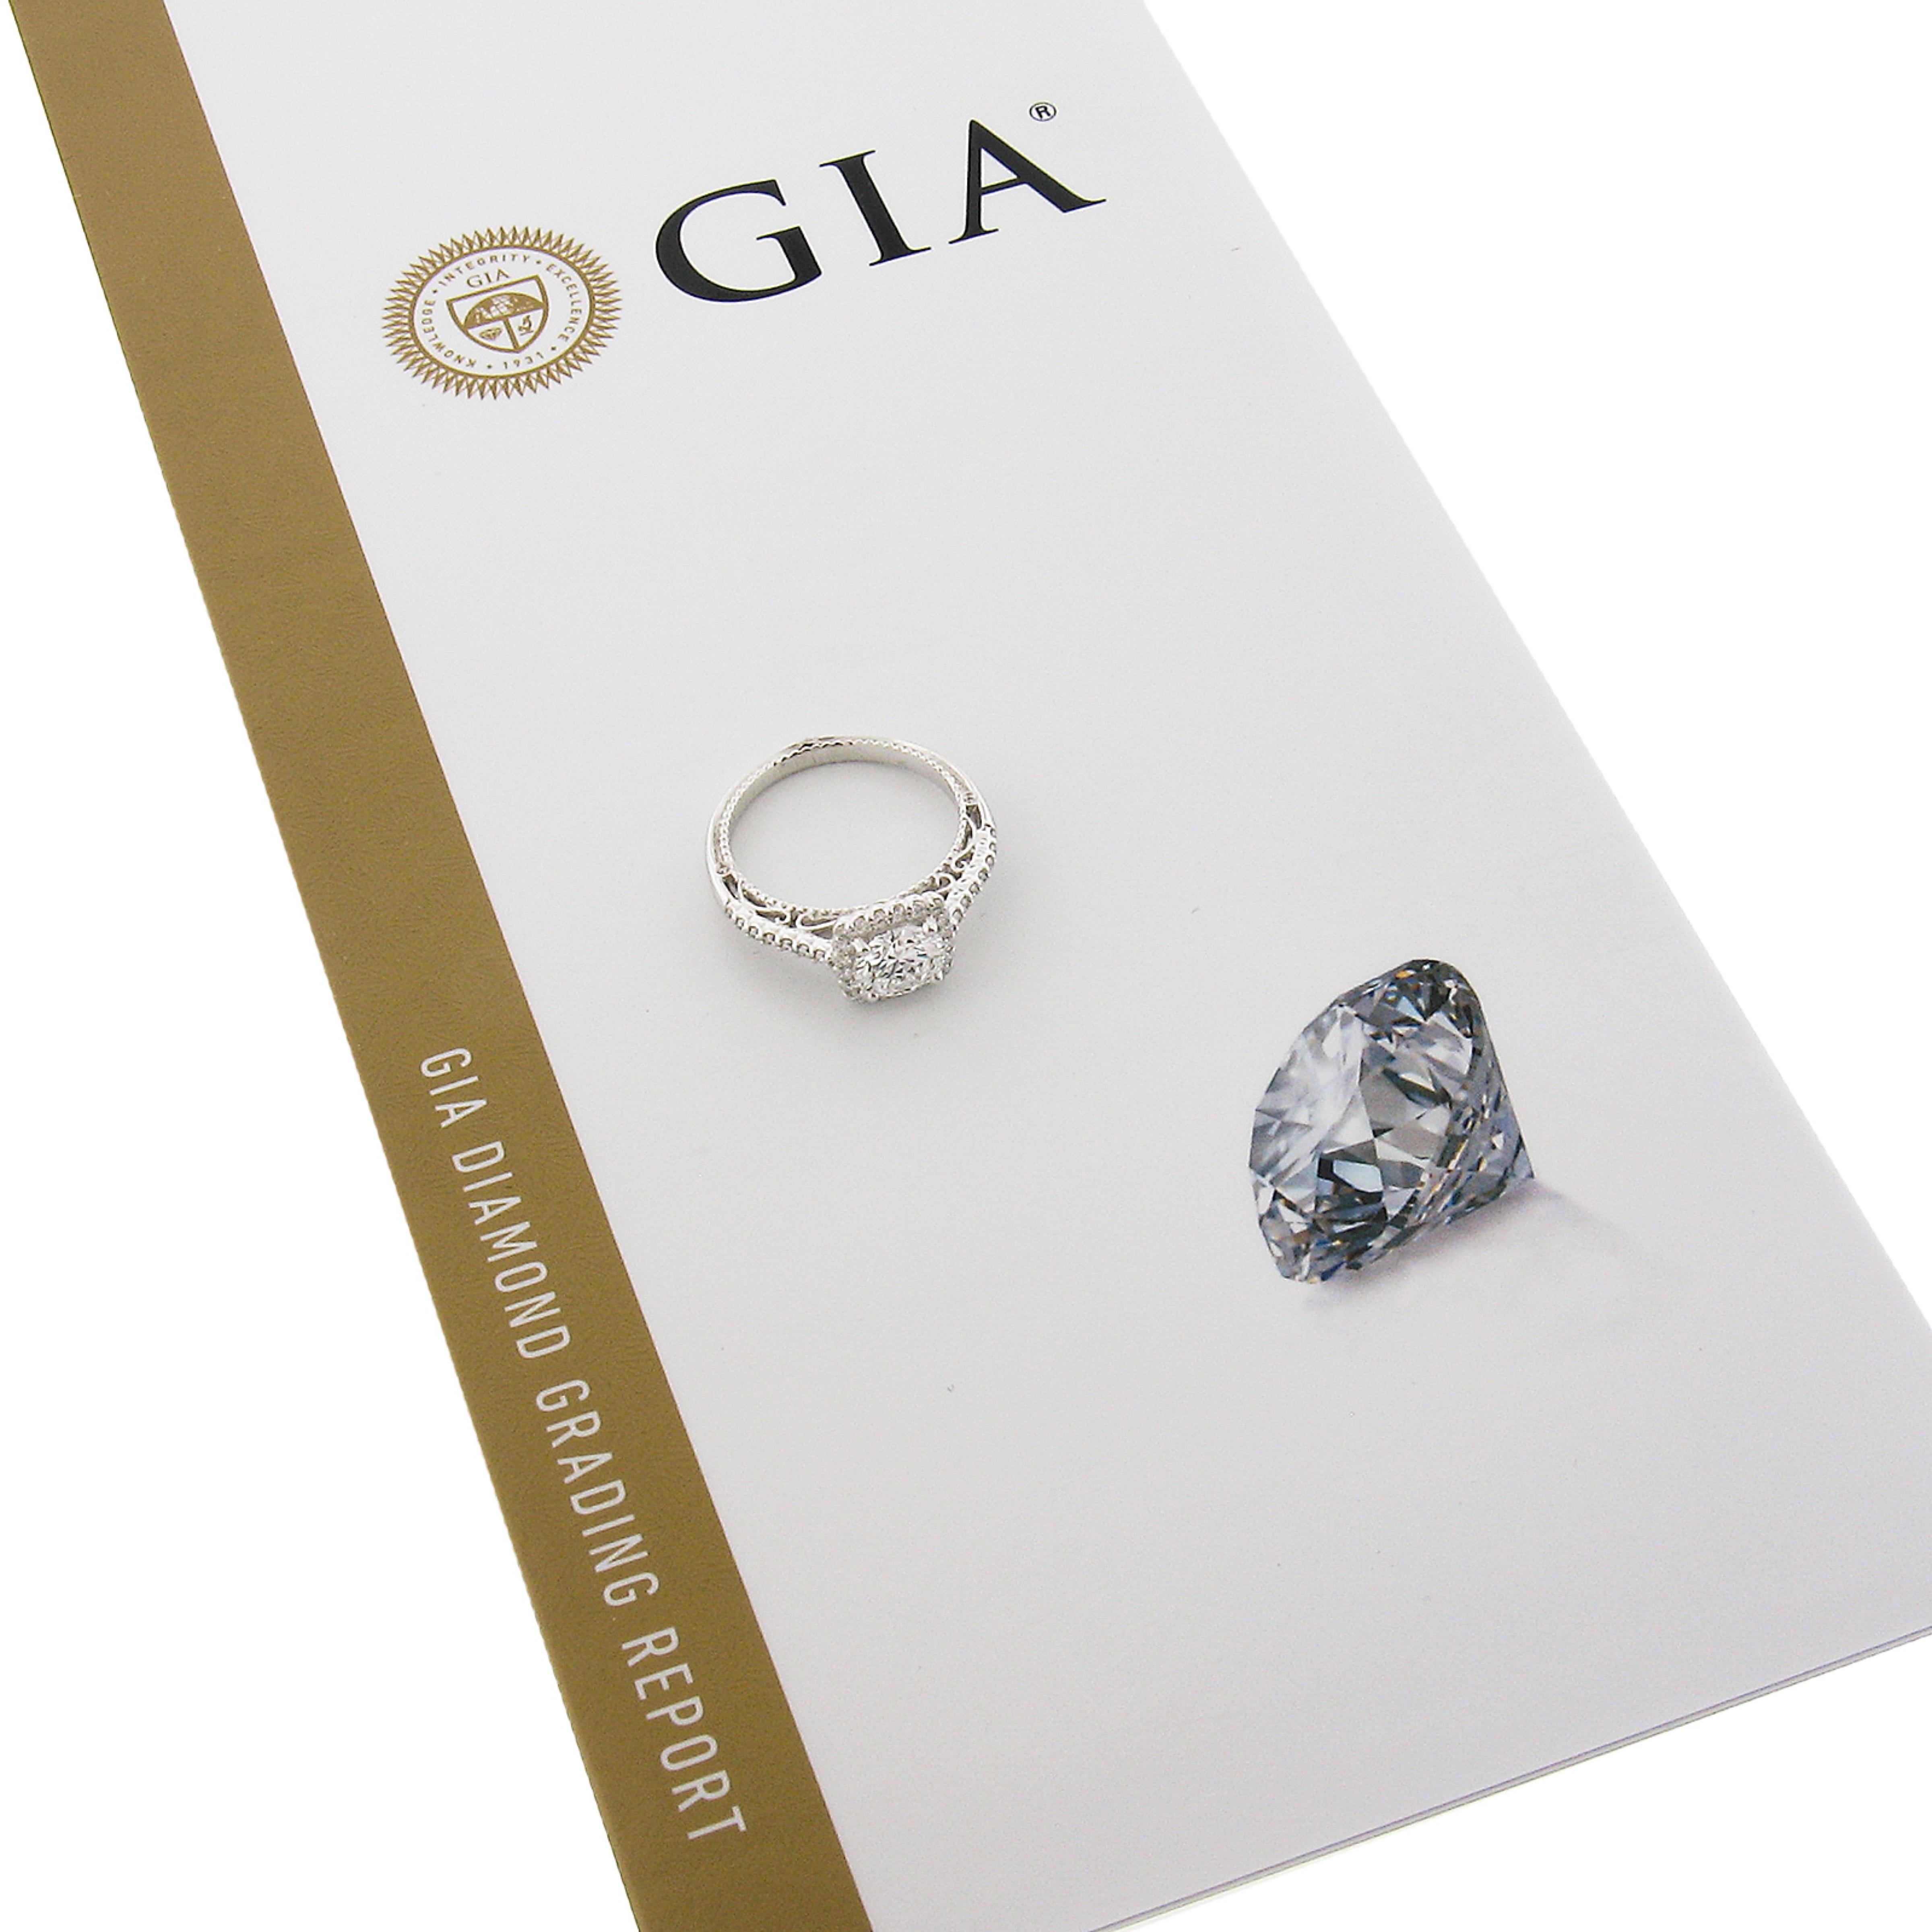 Cette élégante et chic bague de fiançailles en diamant de Verragio est fabriquée en or blanc massif 18 carats et présente un magnifique solitaire en diamant rond de taille brillant certifié par le GIA. Ce diamant central est de très haute qualité